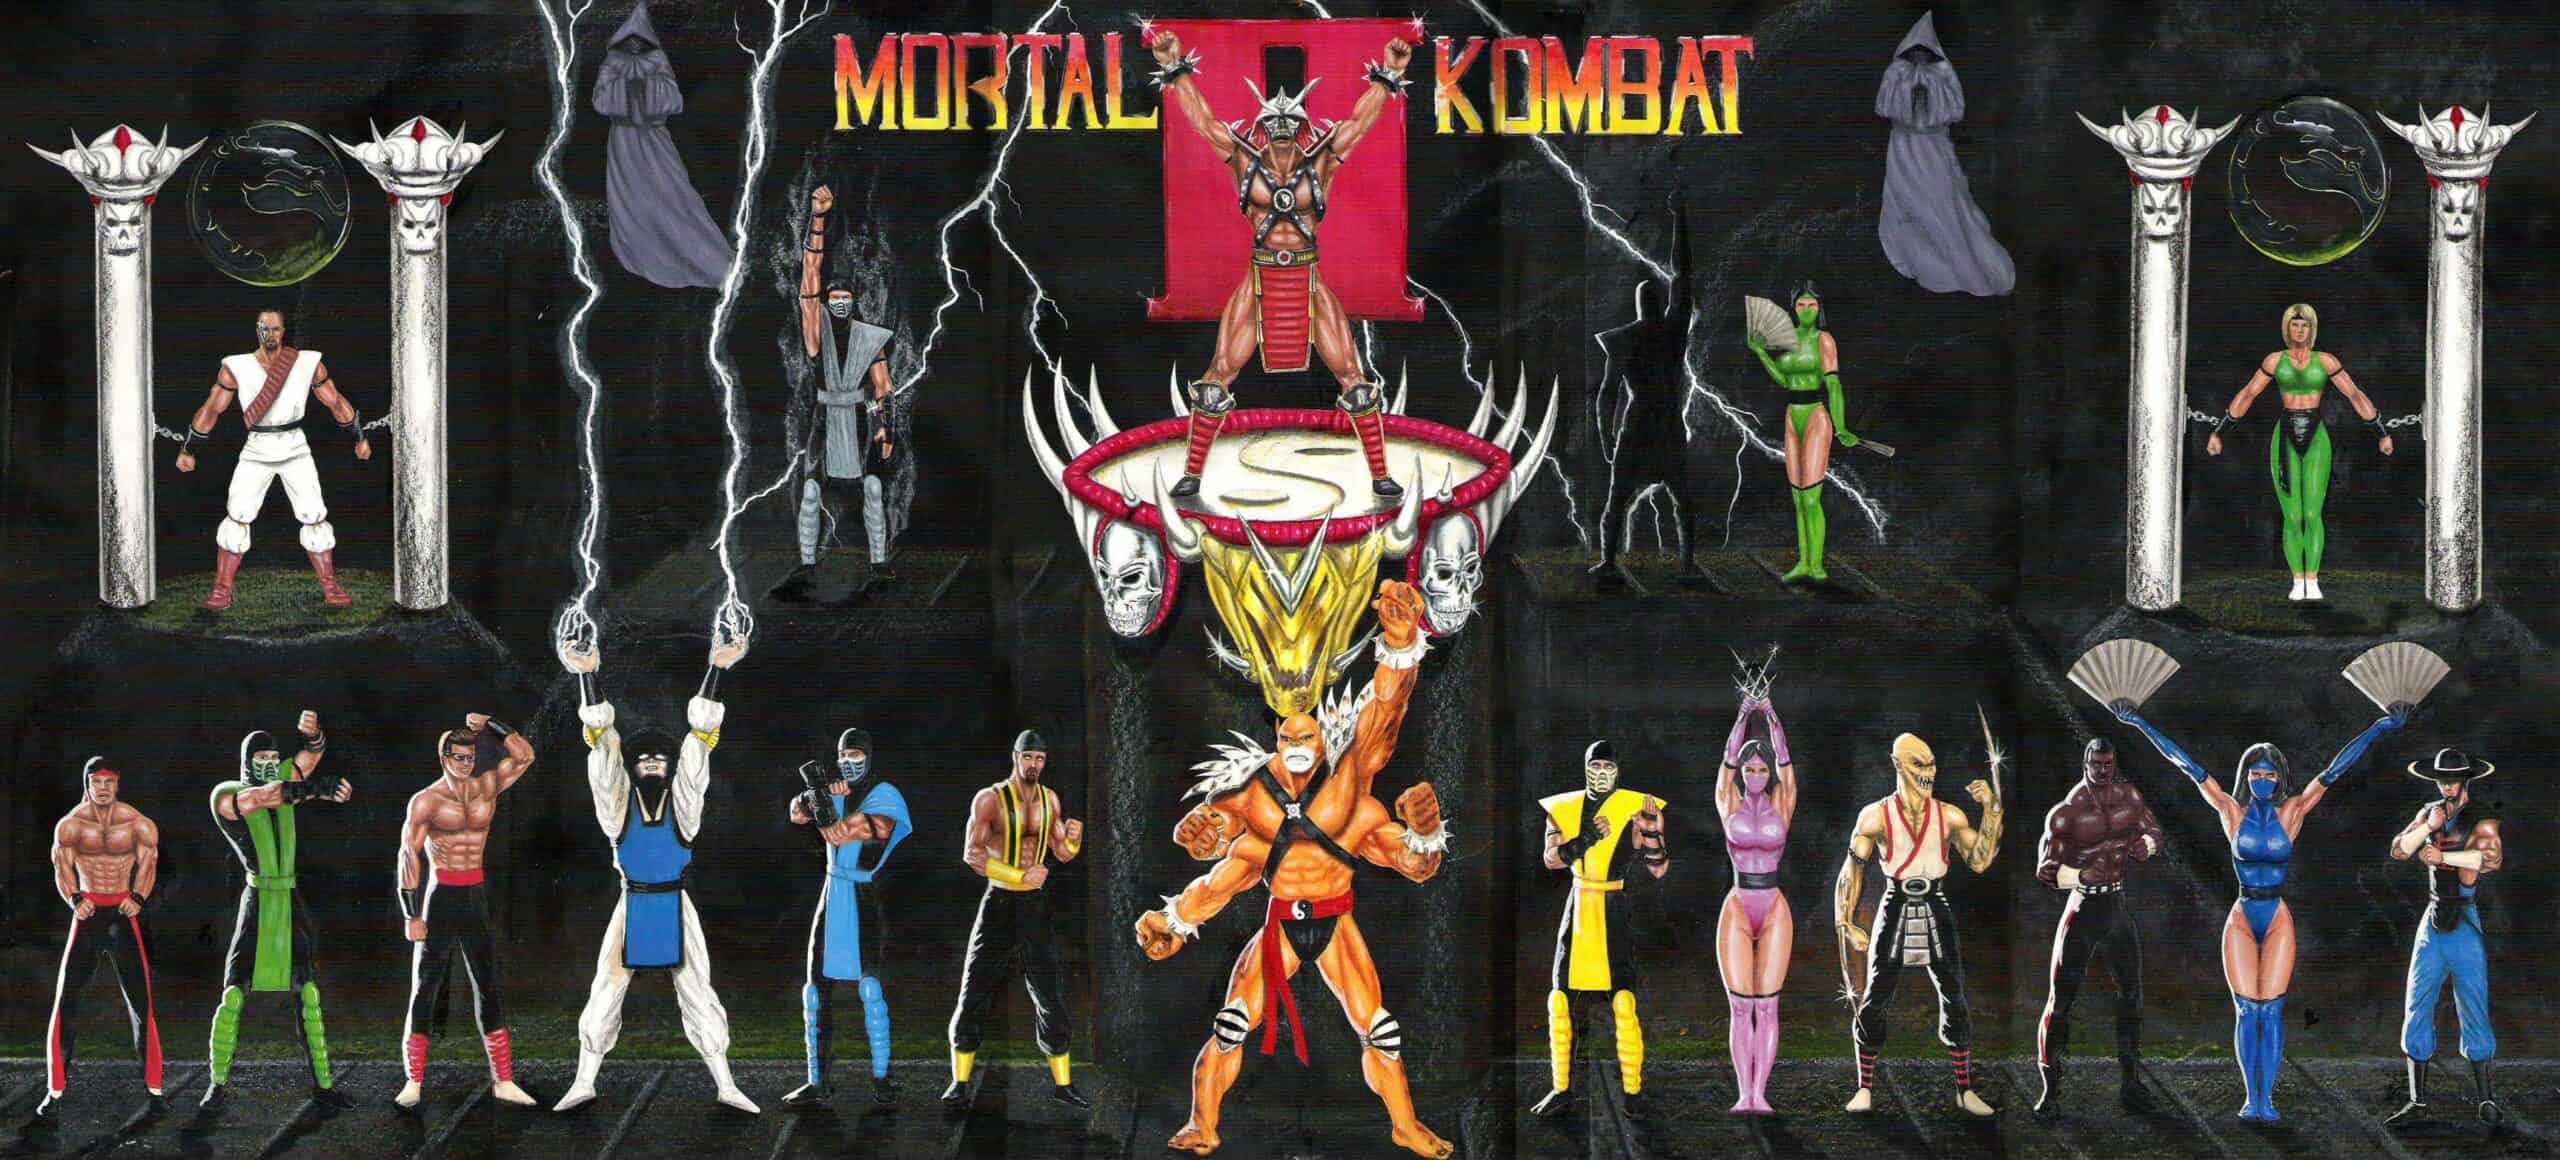 Best Fighting Games - Mortal Kombat II